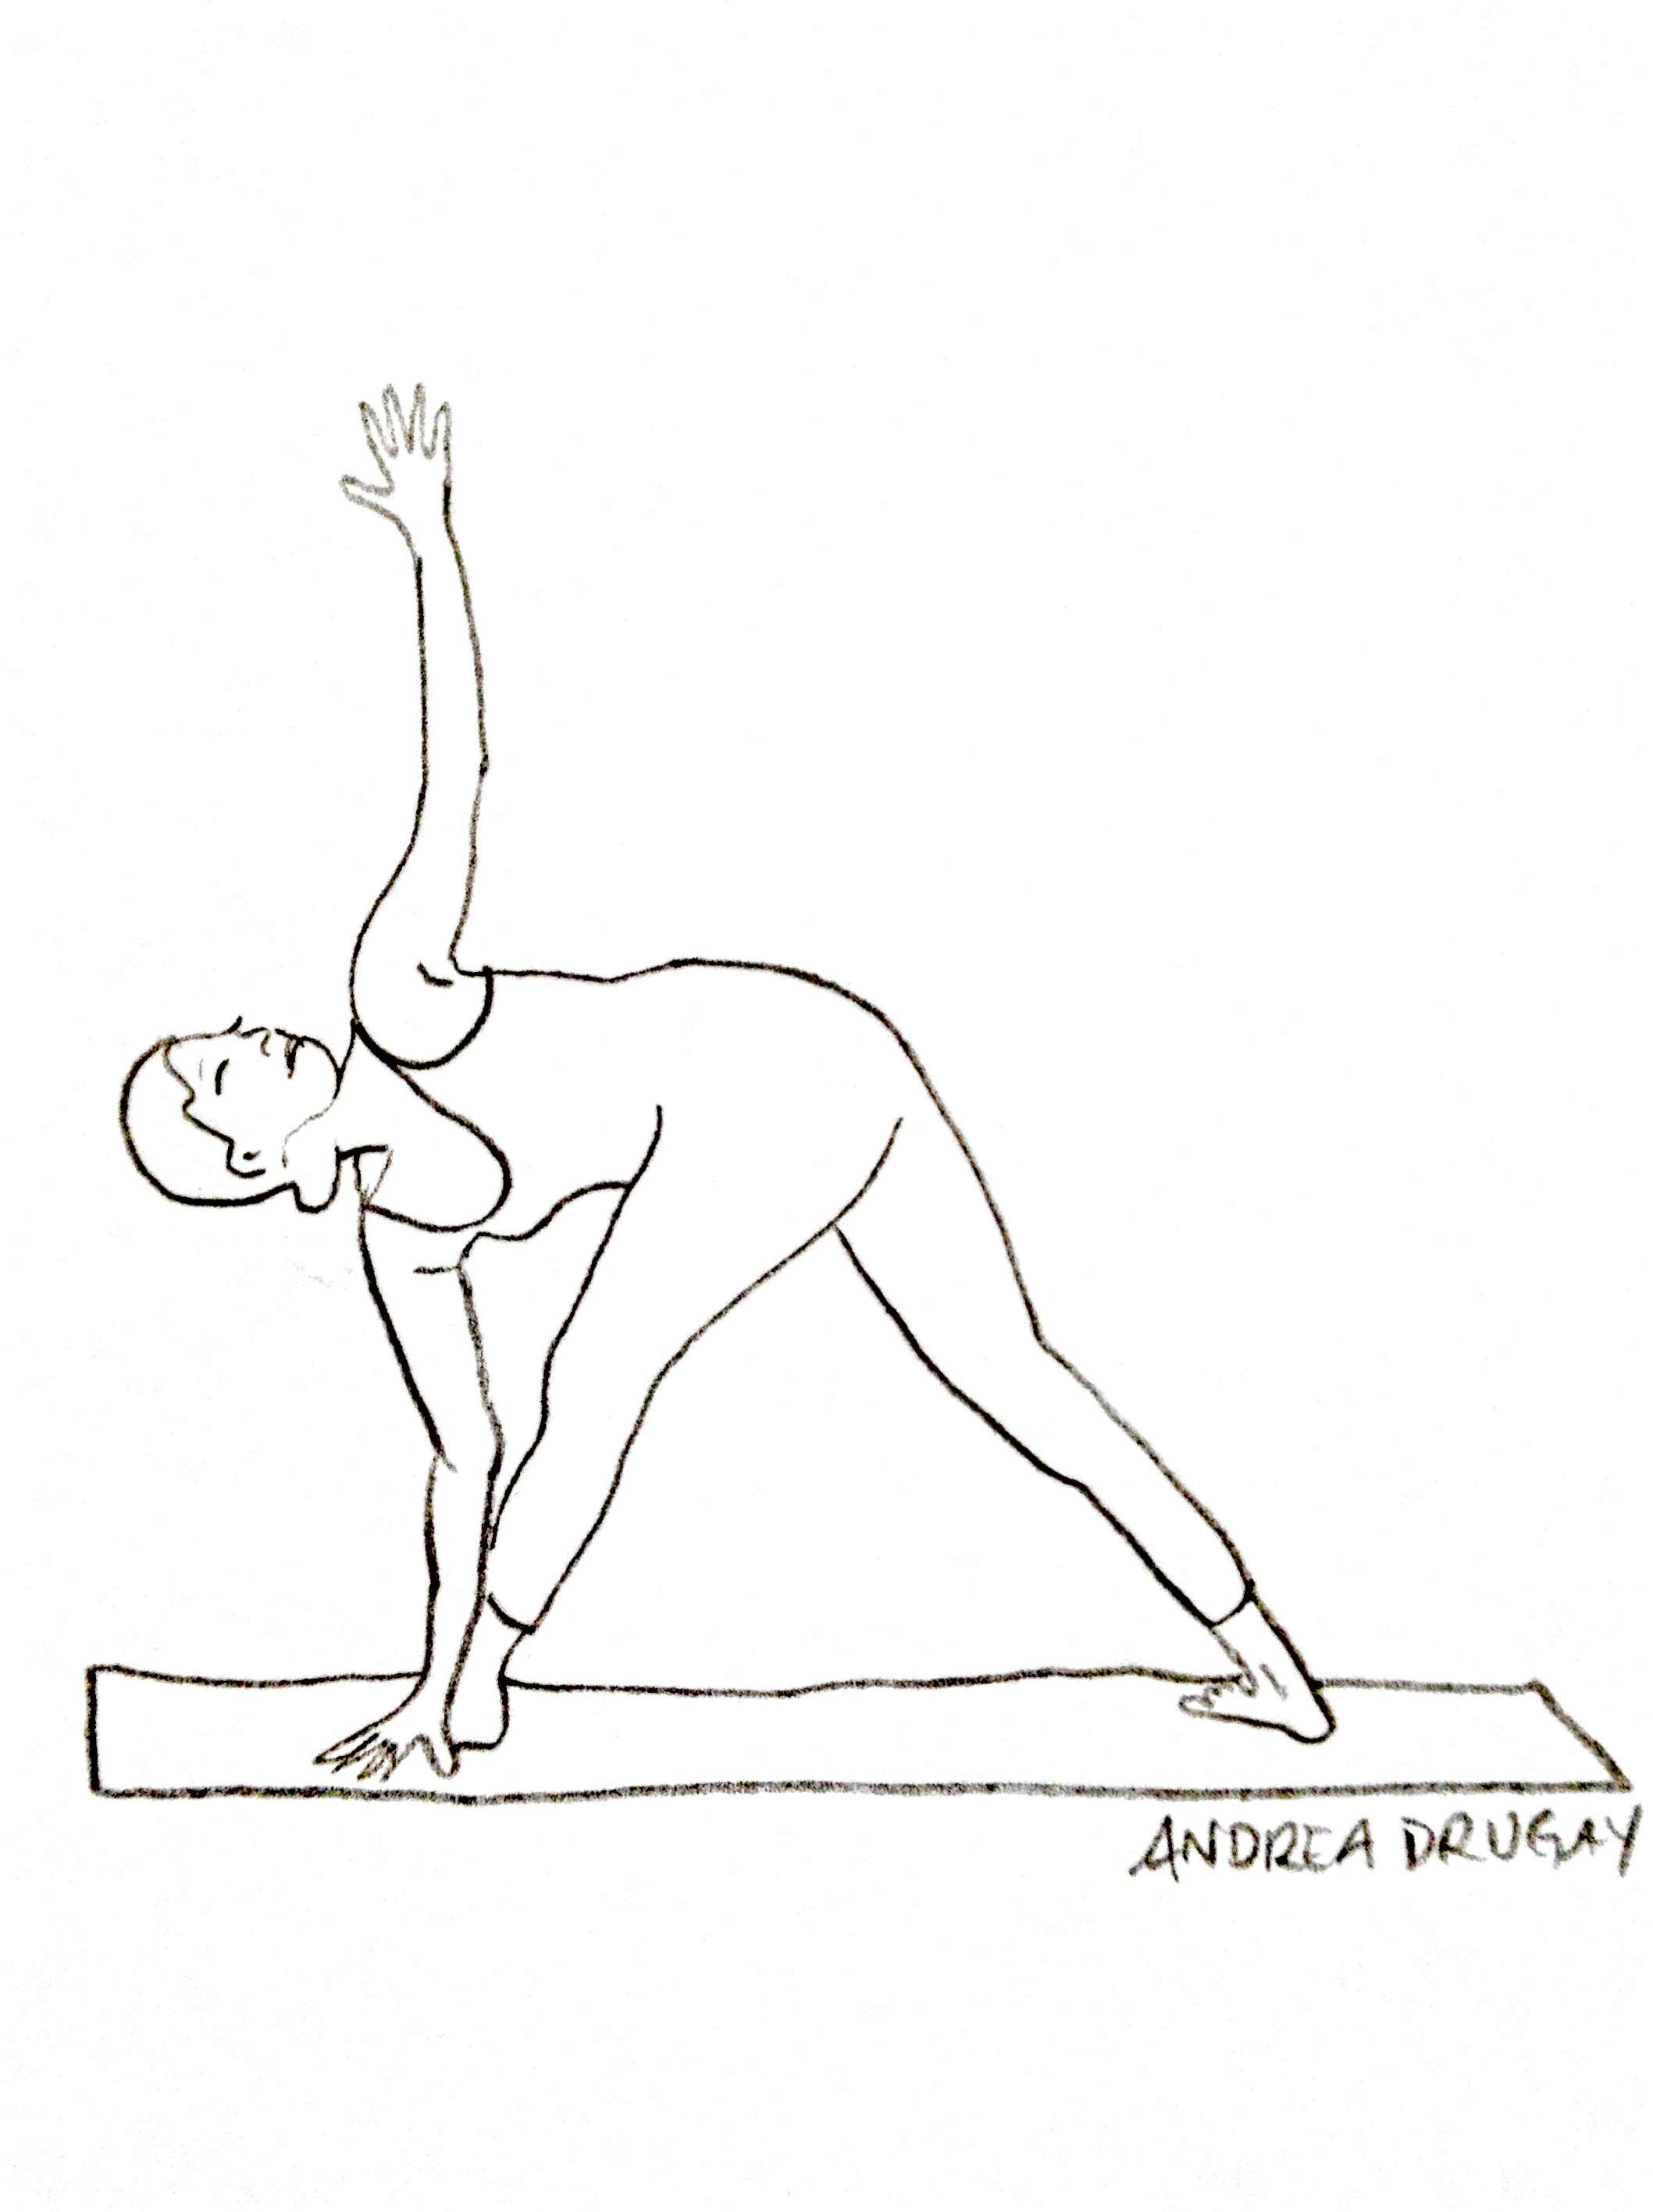 Pinky Brown Woman Yoga Poses Illustration Set